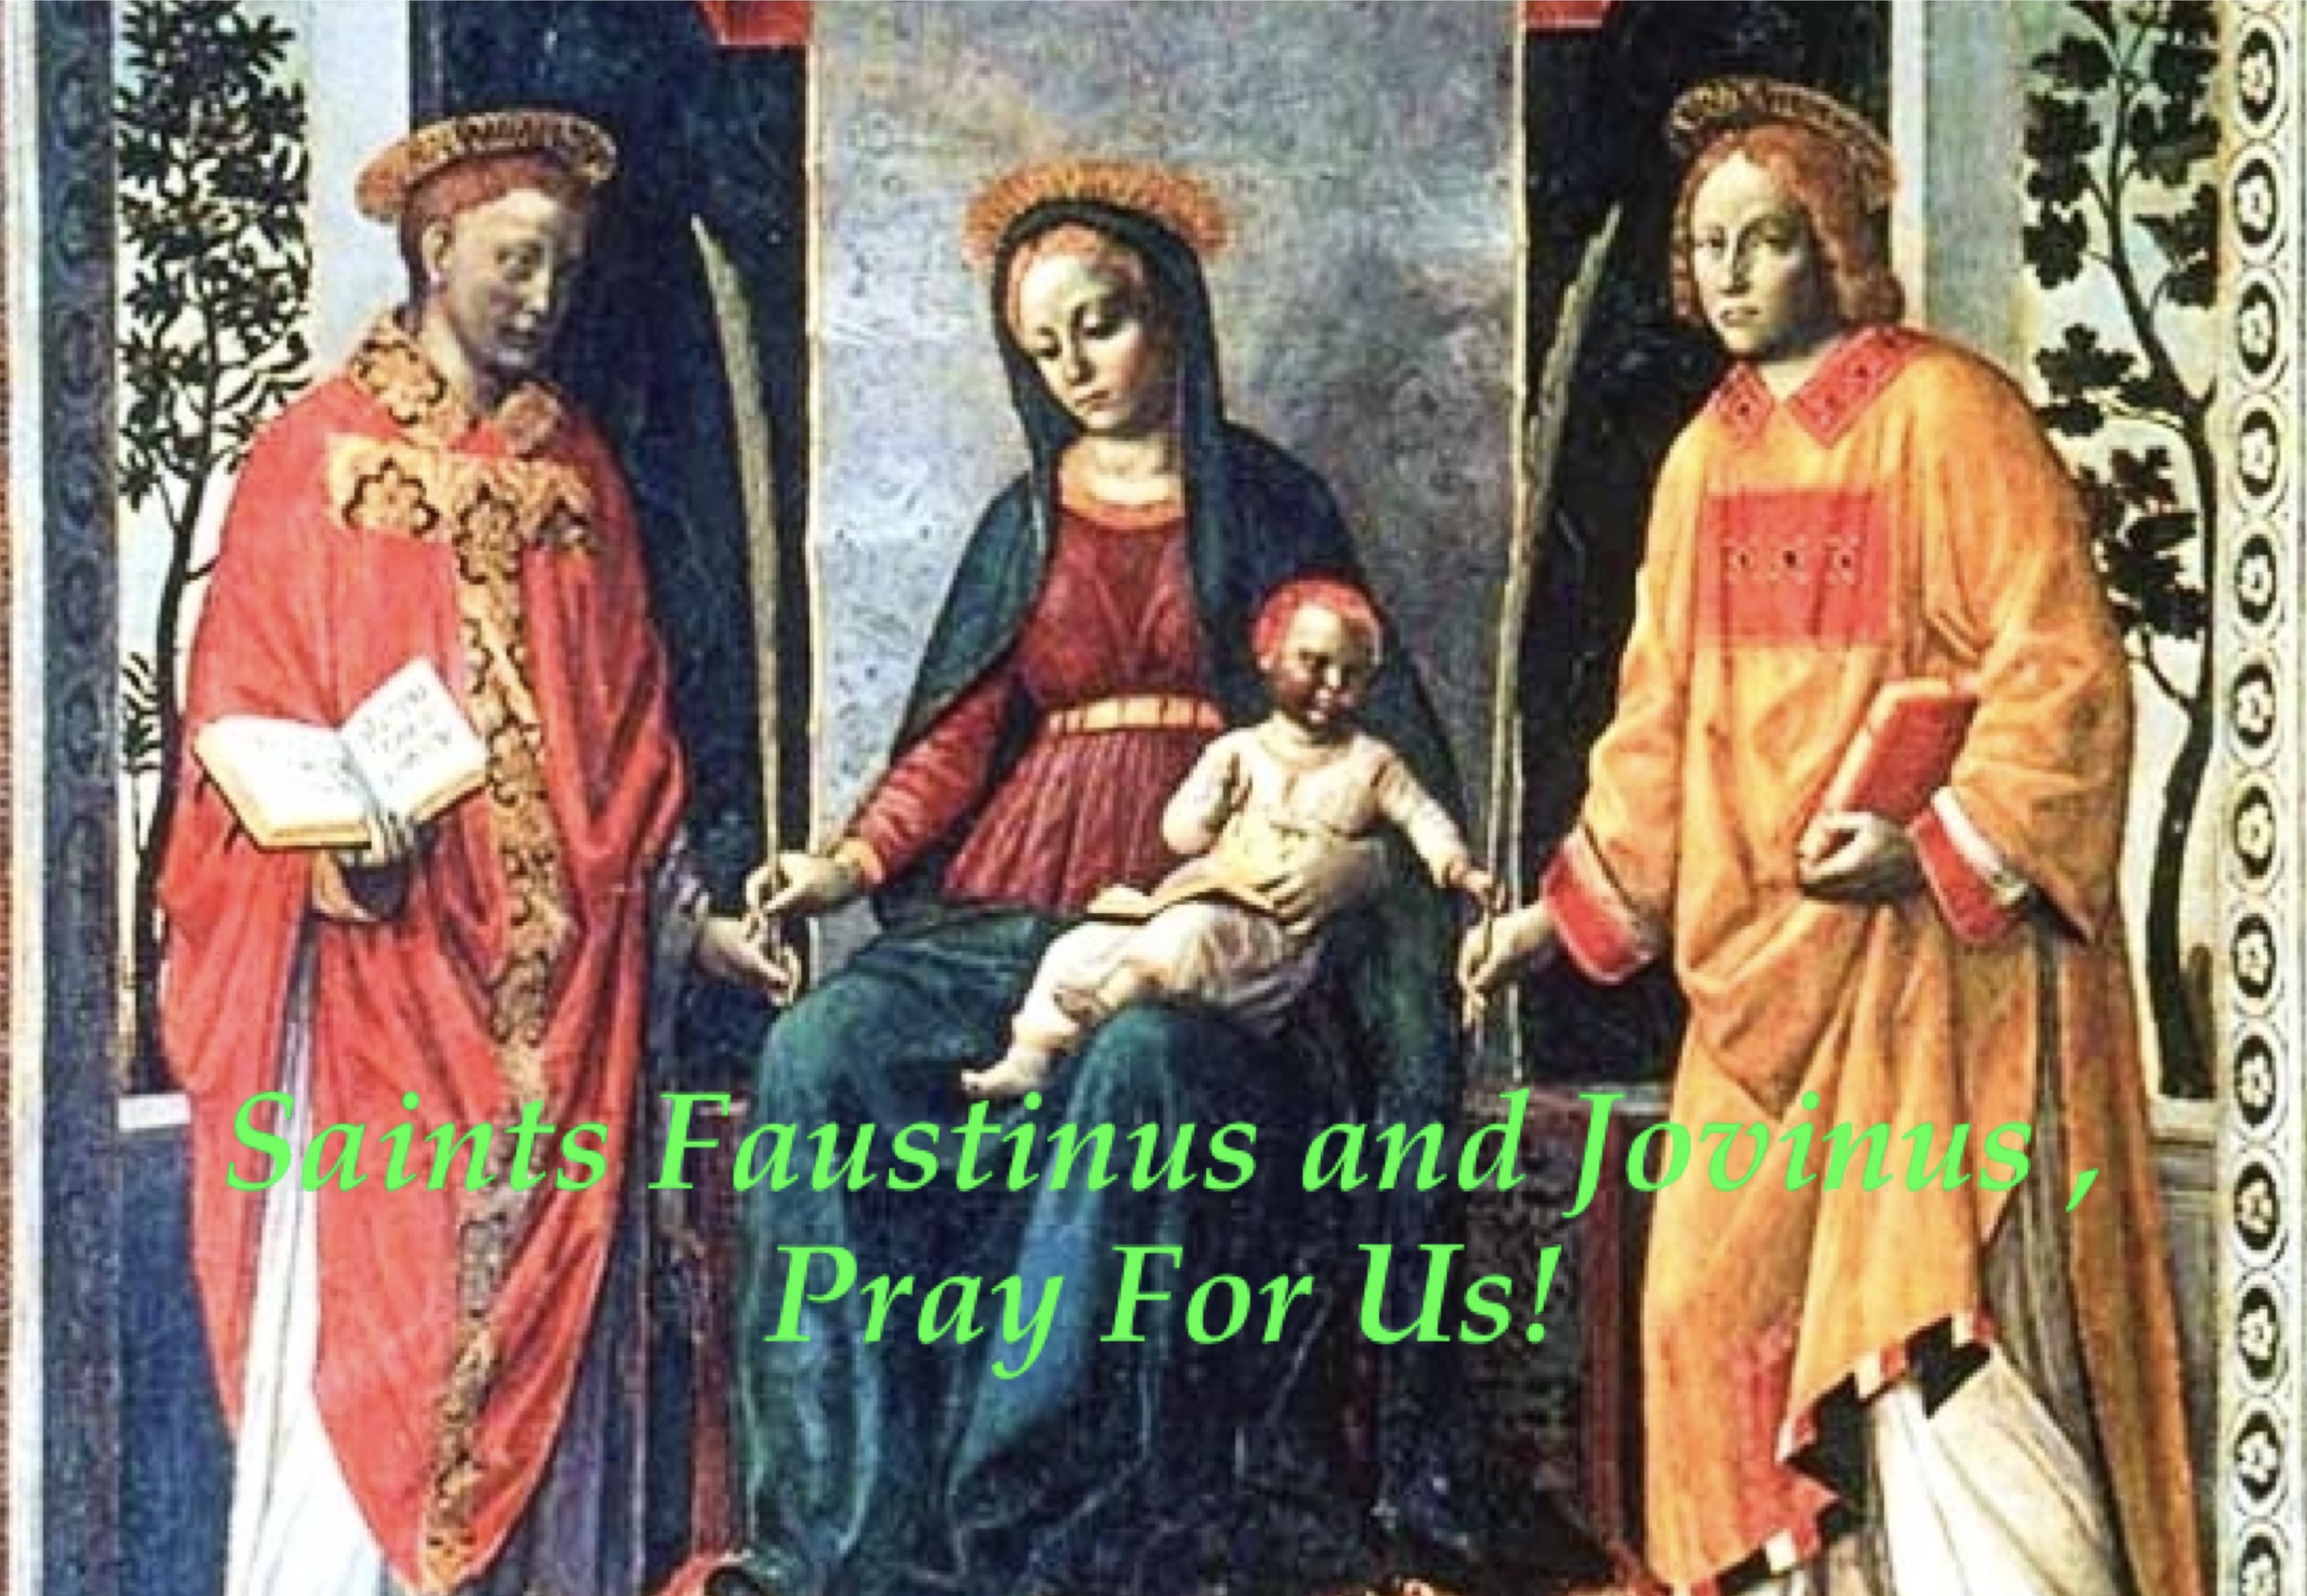 16th February - Saints Faustinus and Jovinus